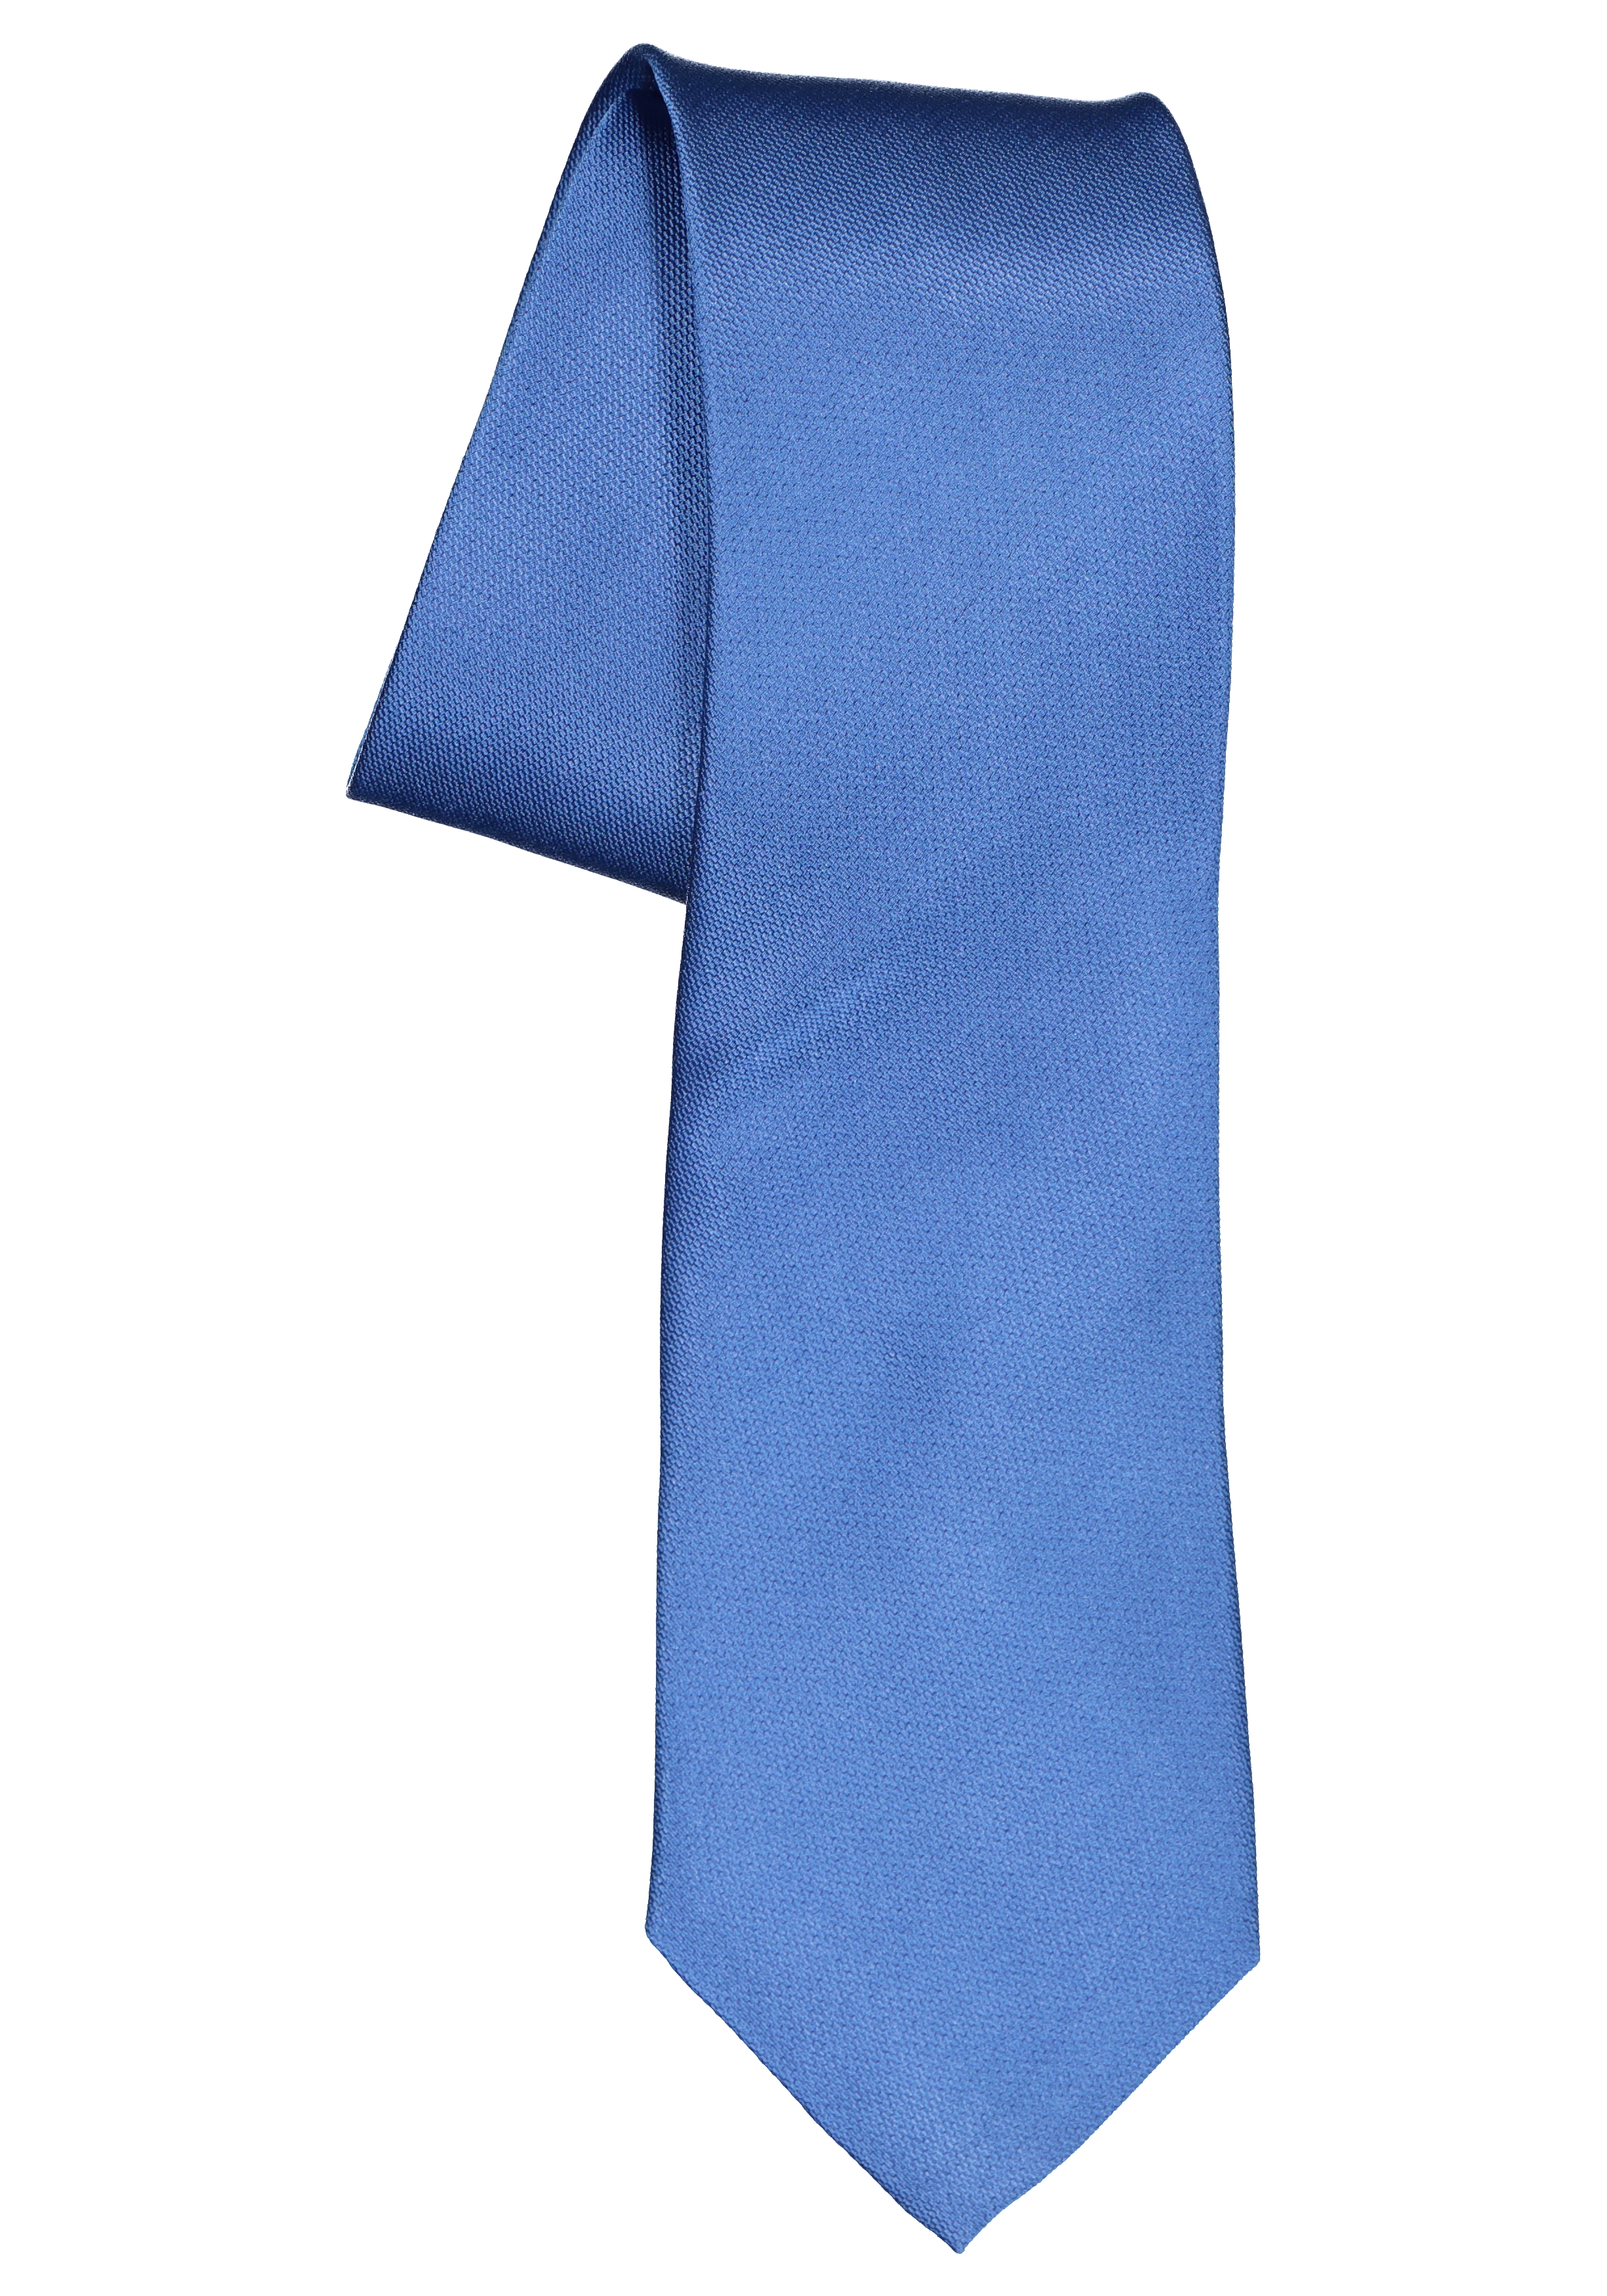 ETERNA stropdas, lichtblauw